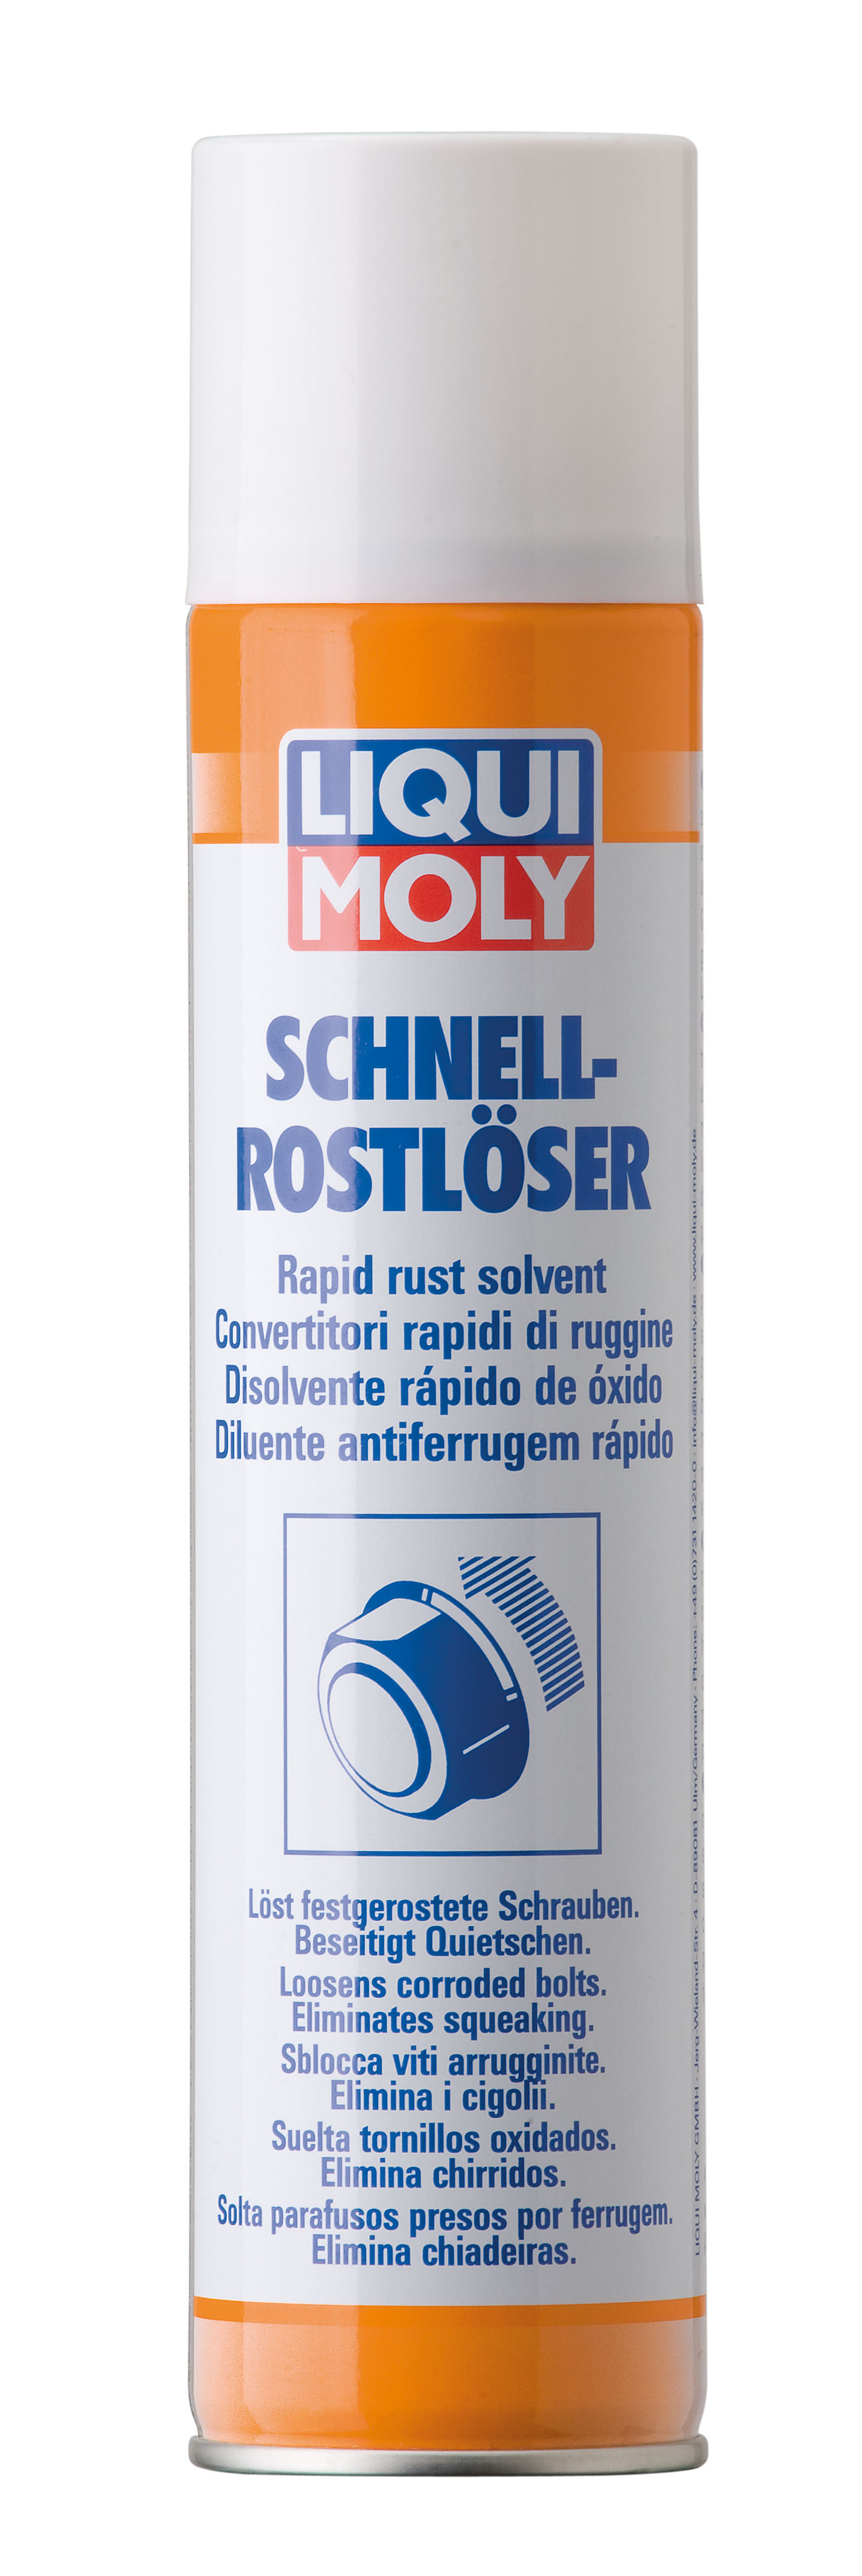 Растворитель ржавчины Schnell-Rostloser, 300мл - Liqui Moly 1612